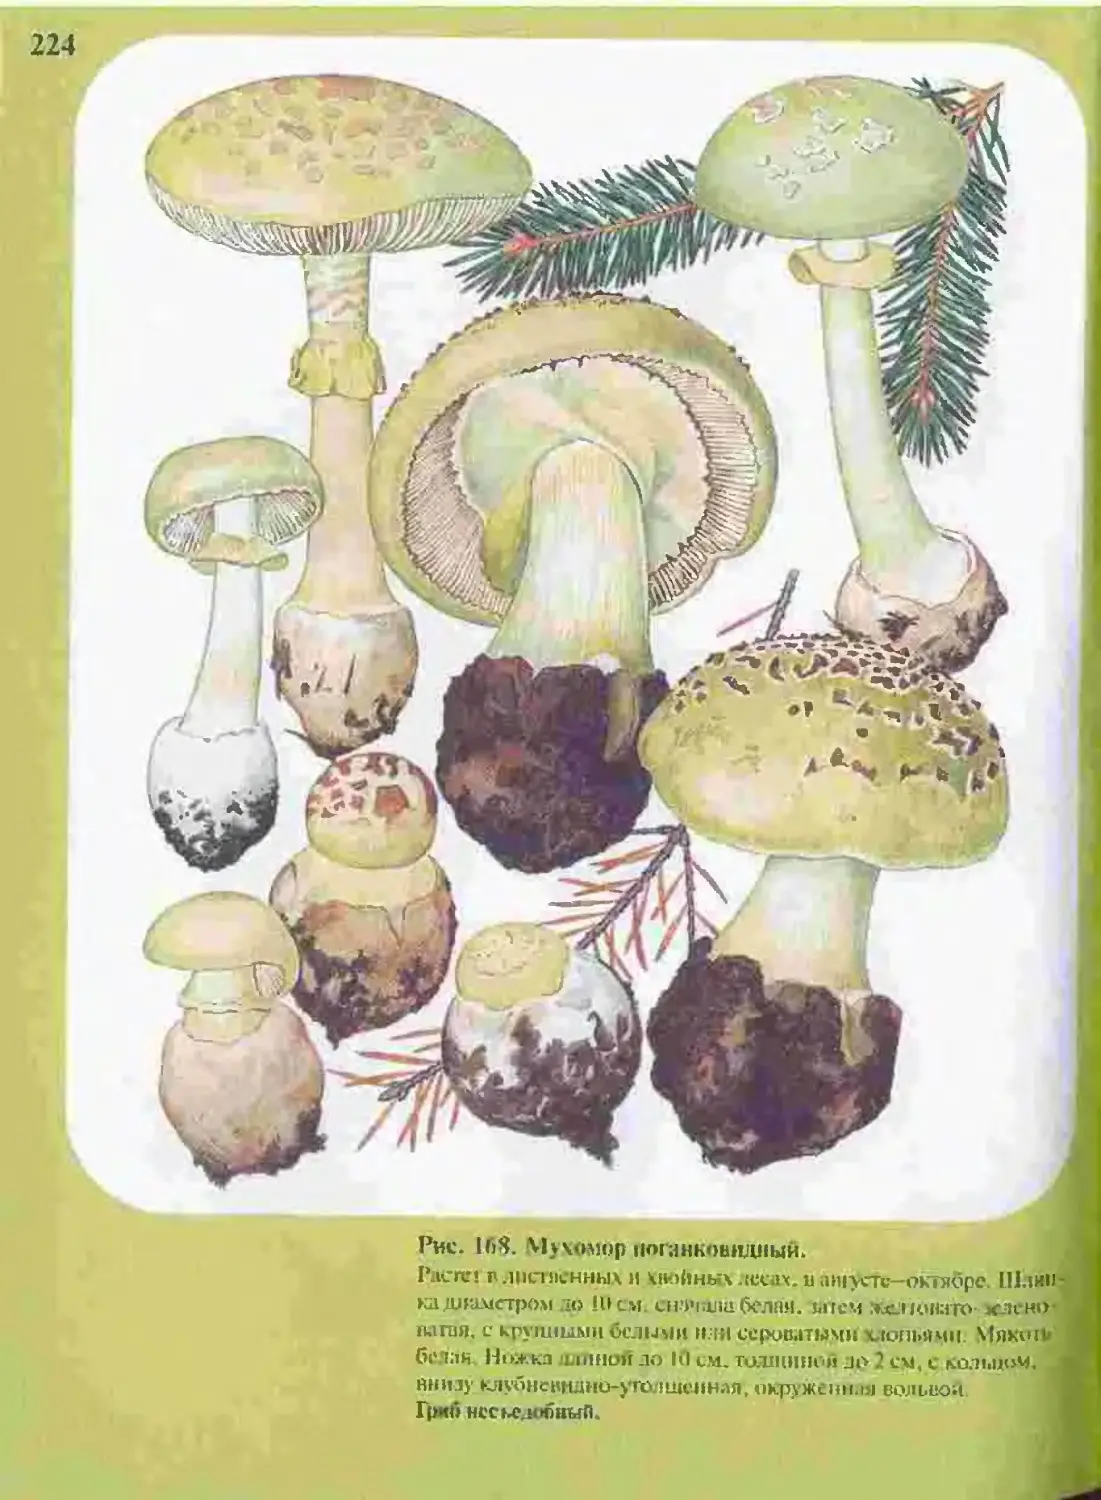 Причудливые грибы в атласе определителе